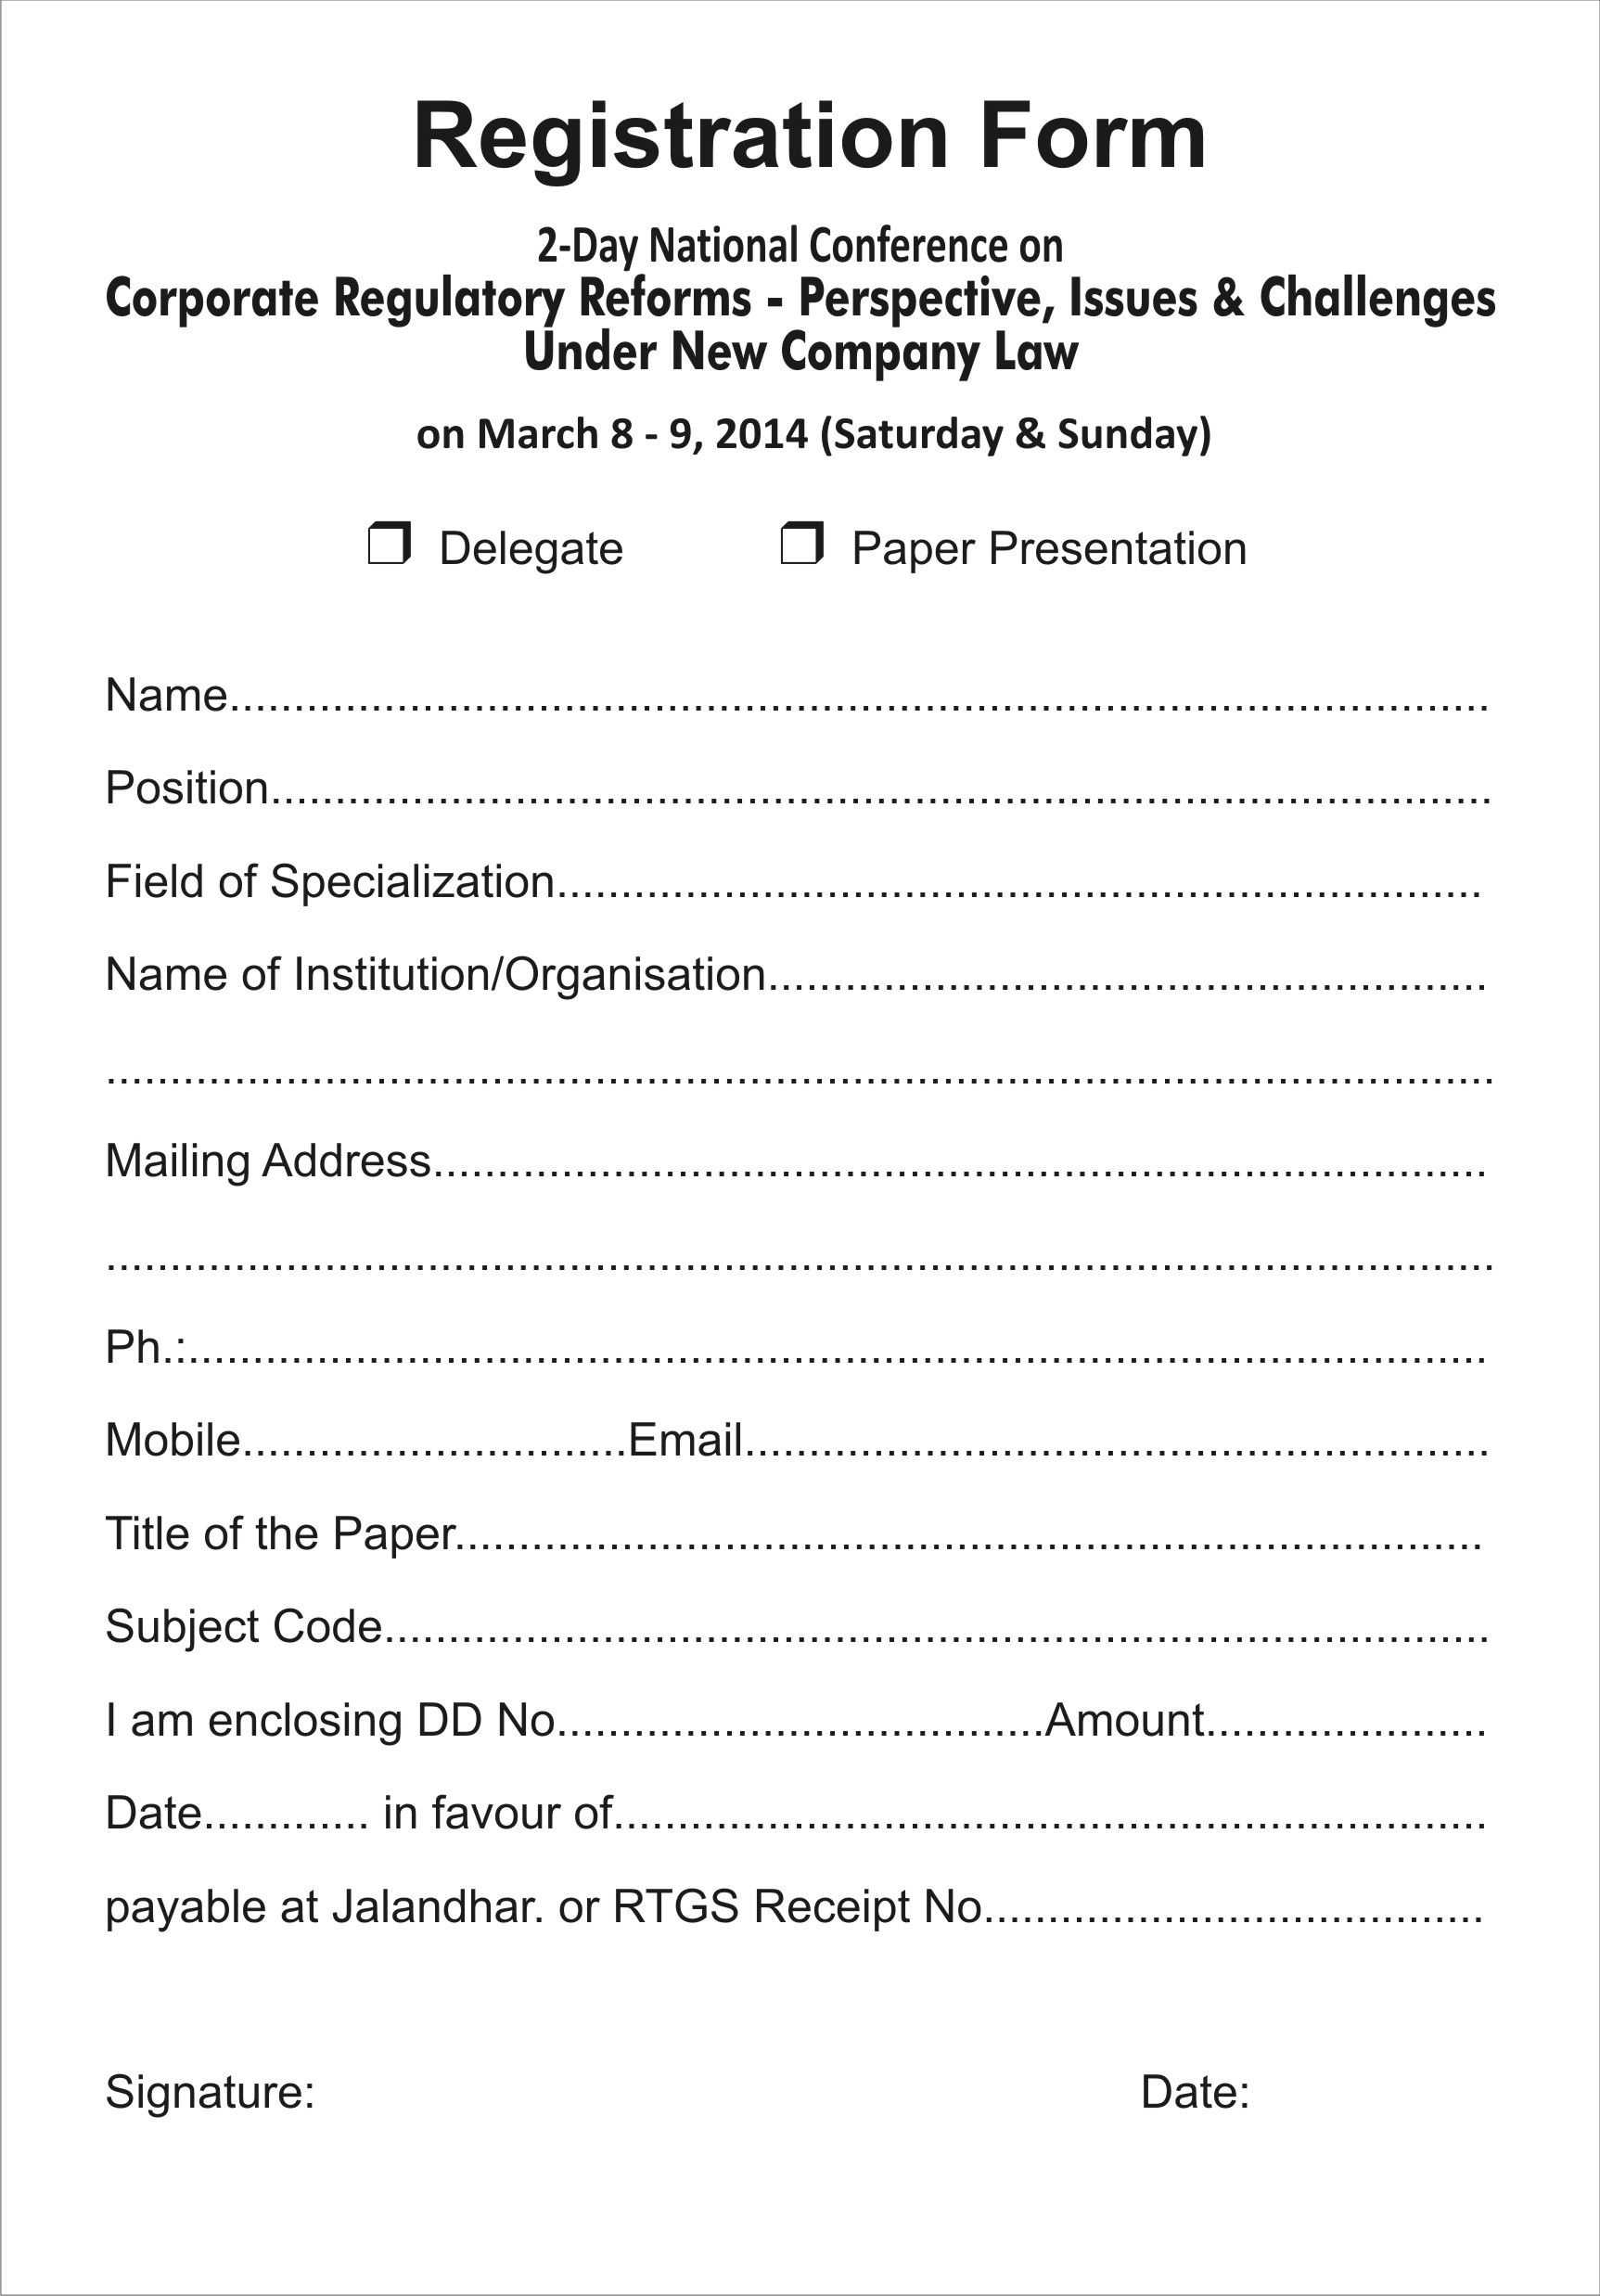 Registration Form Template Download Event Registration Form With Mobile Book Report Template